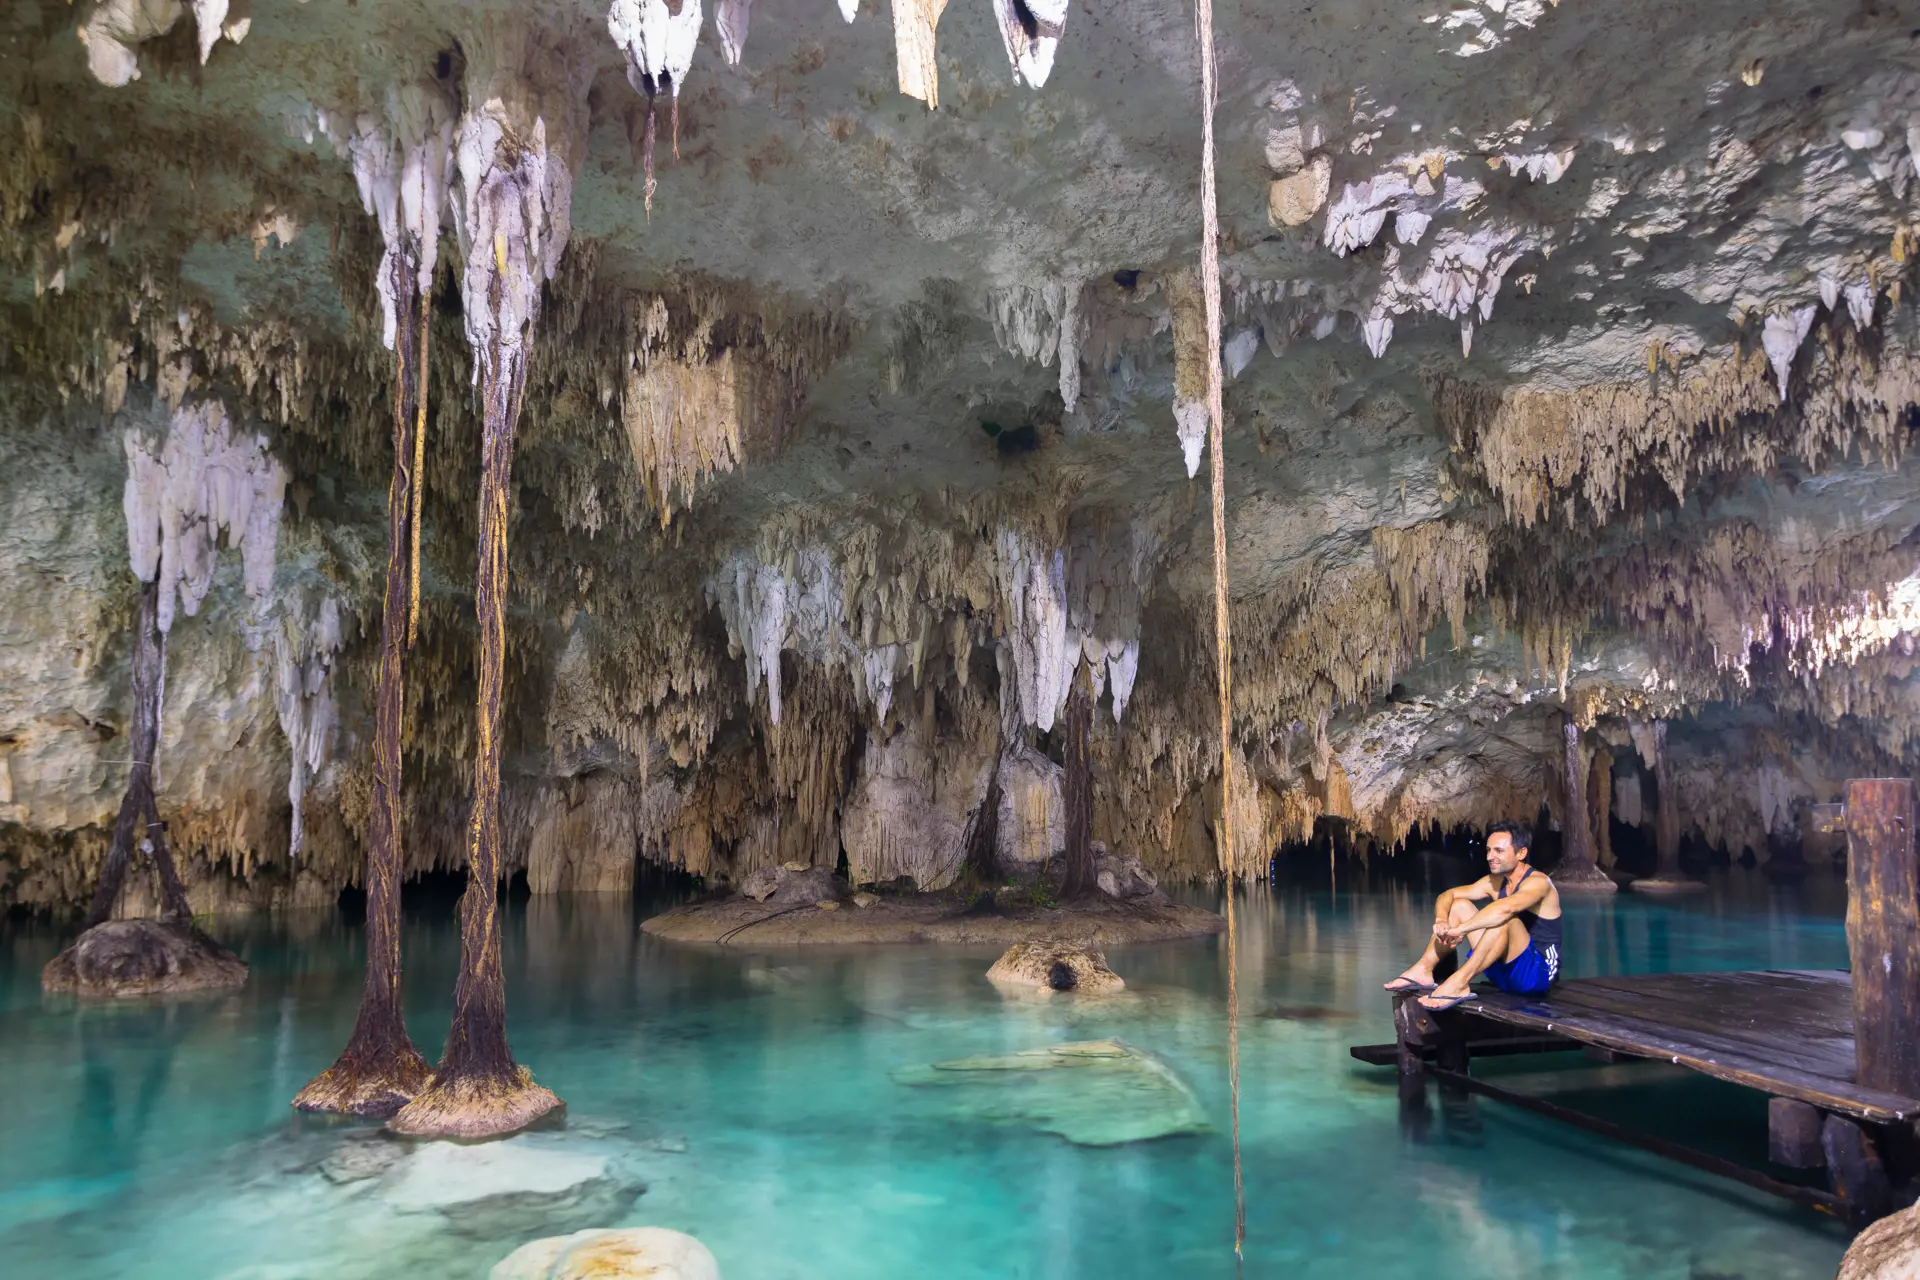 SAC ACTUN - Fra Tulum kan I tage på udflugt og udforske det eventyrlige system af huler, grotter og floder i Sac Actun. 